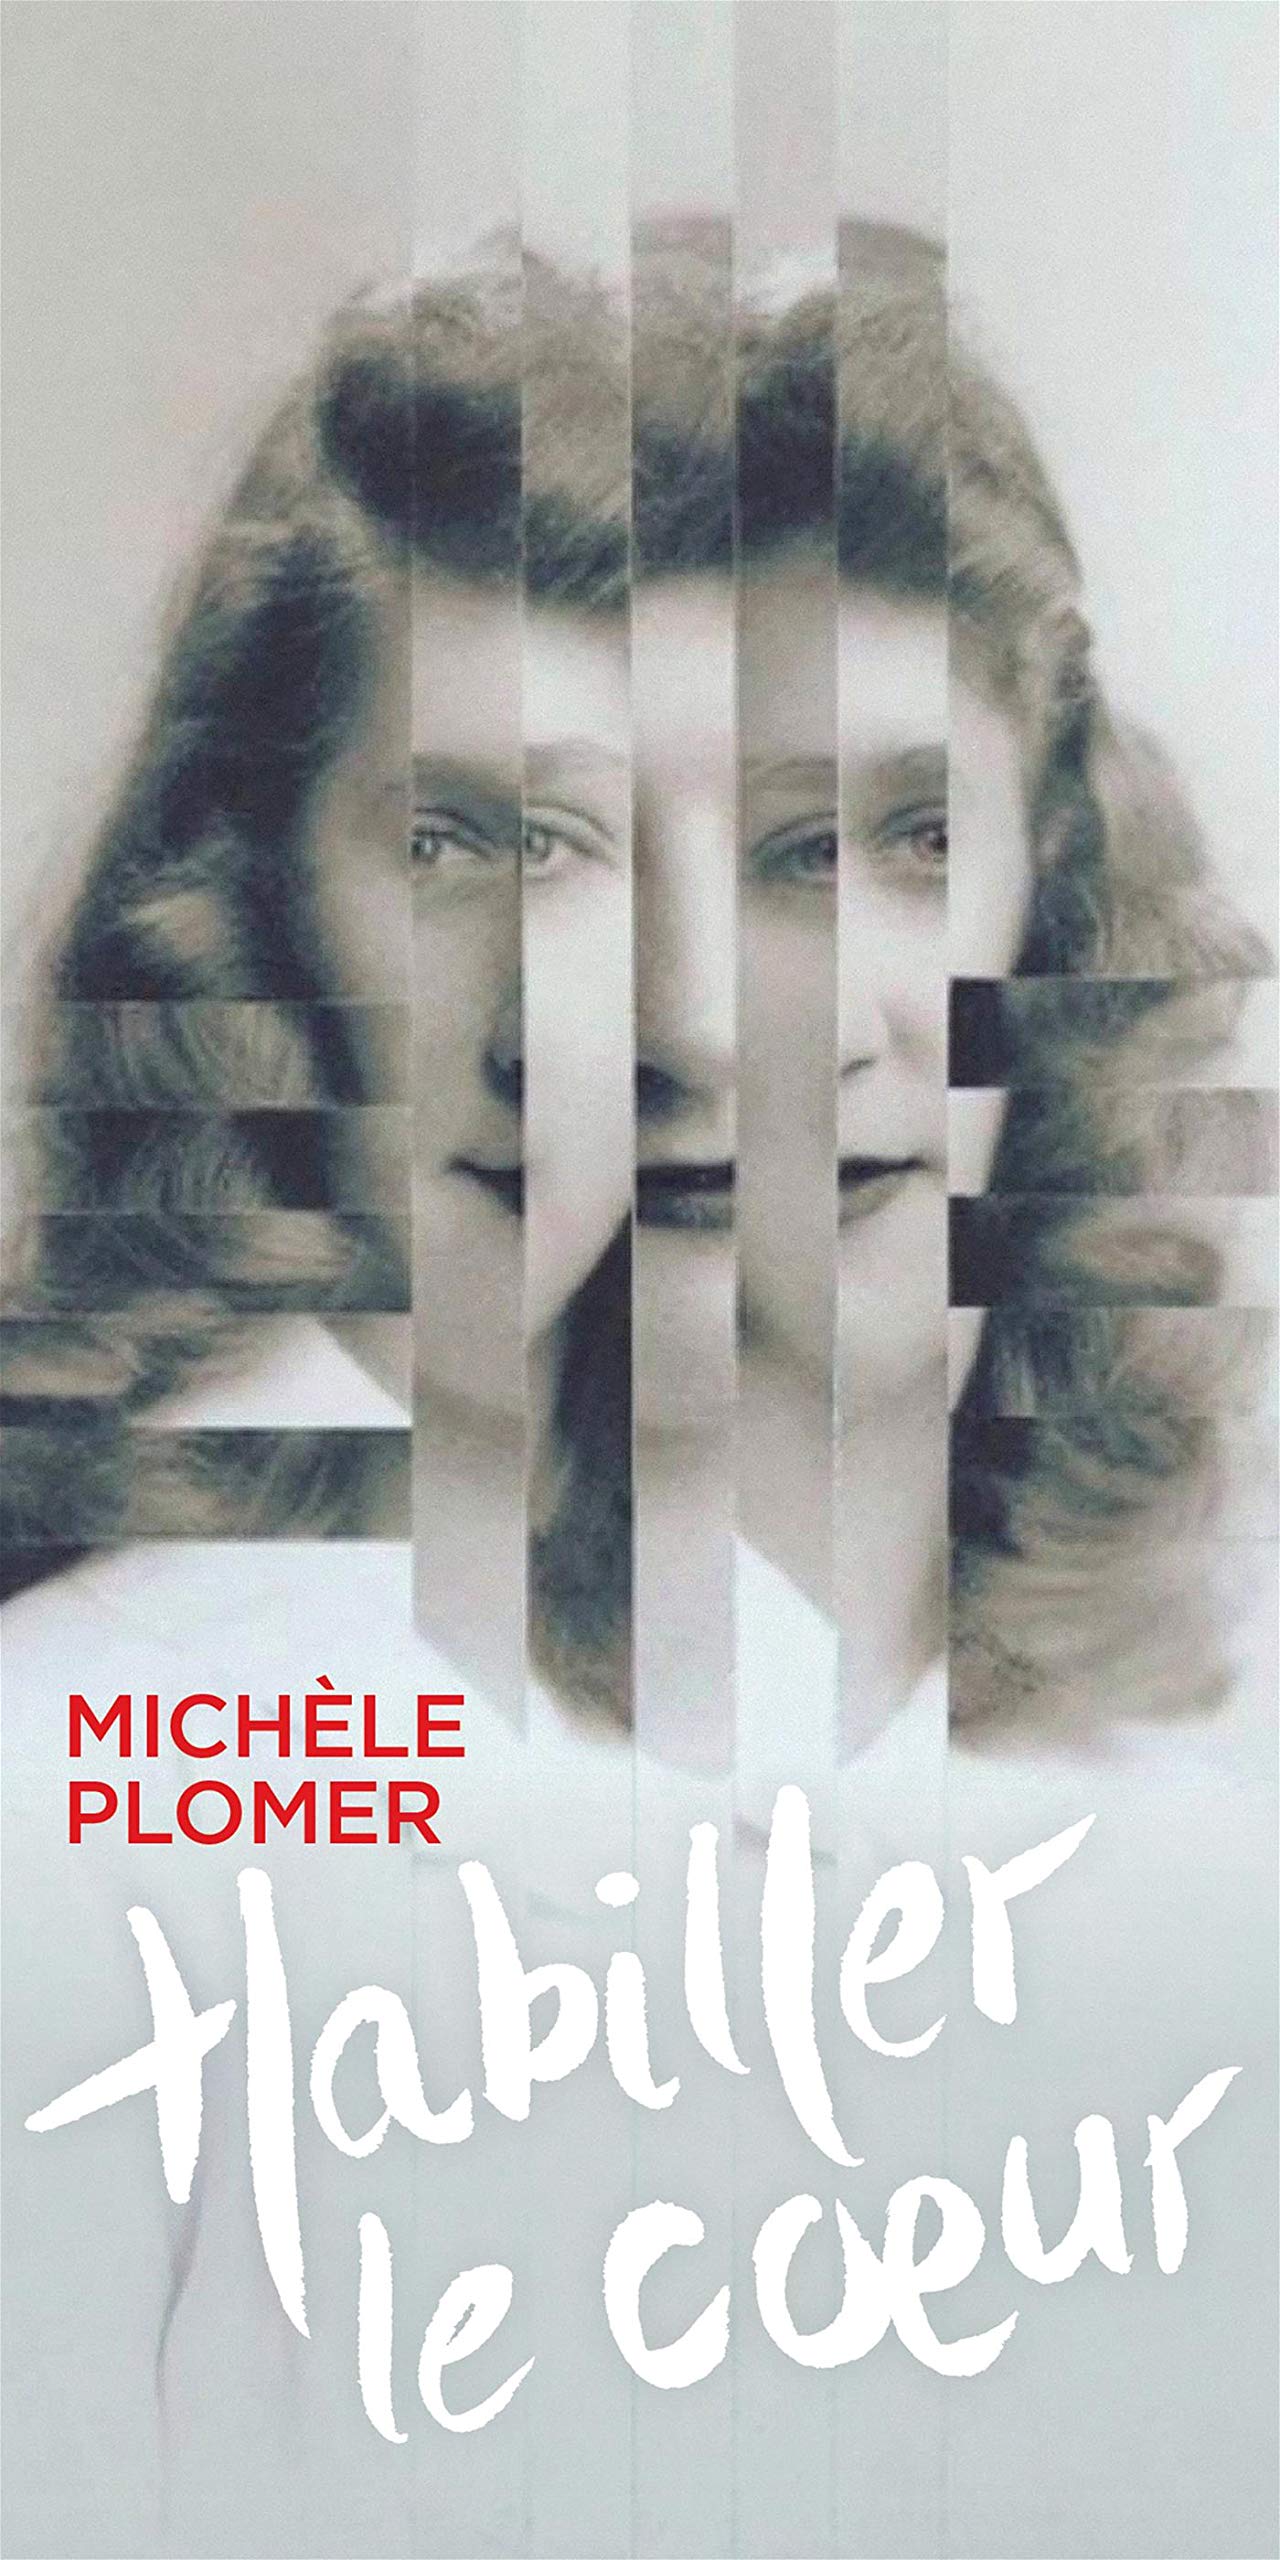 Habiller le coeur - Michèle Plomer